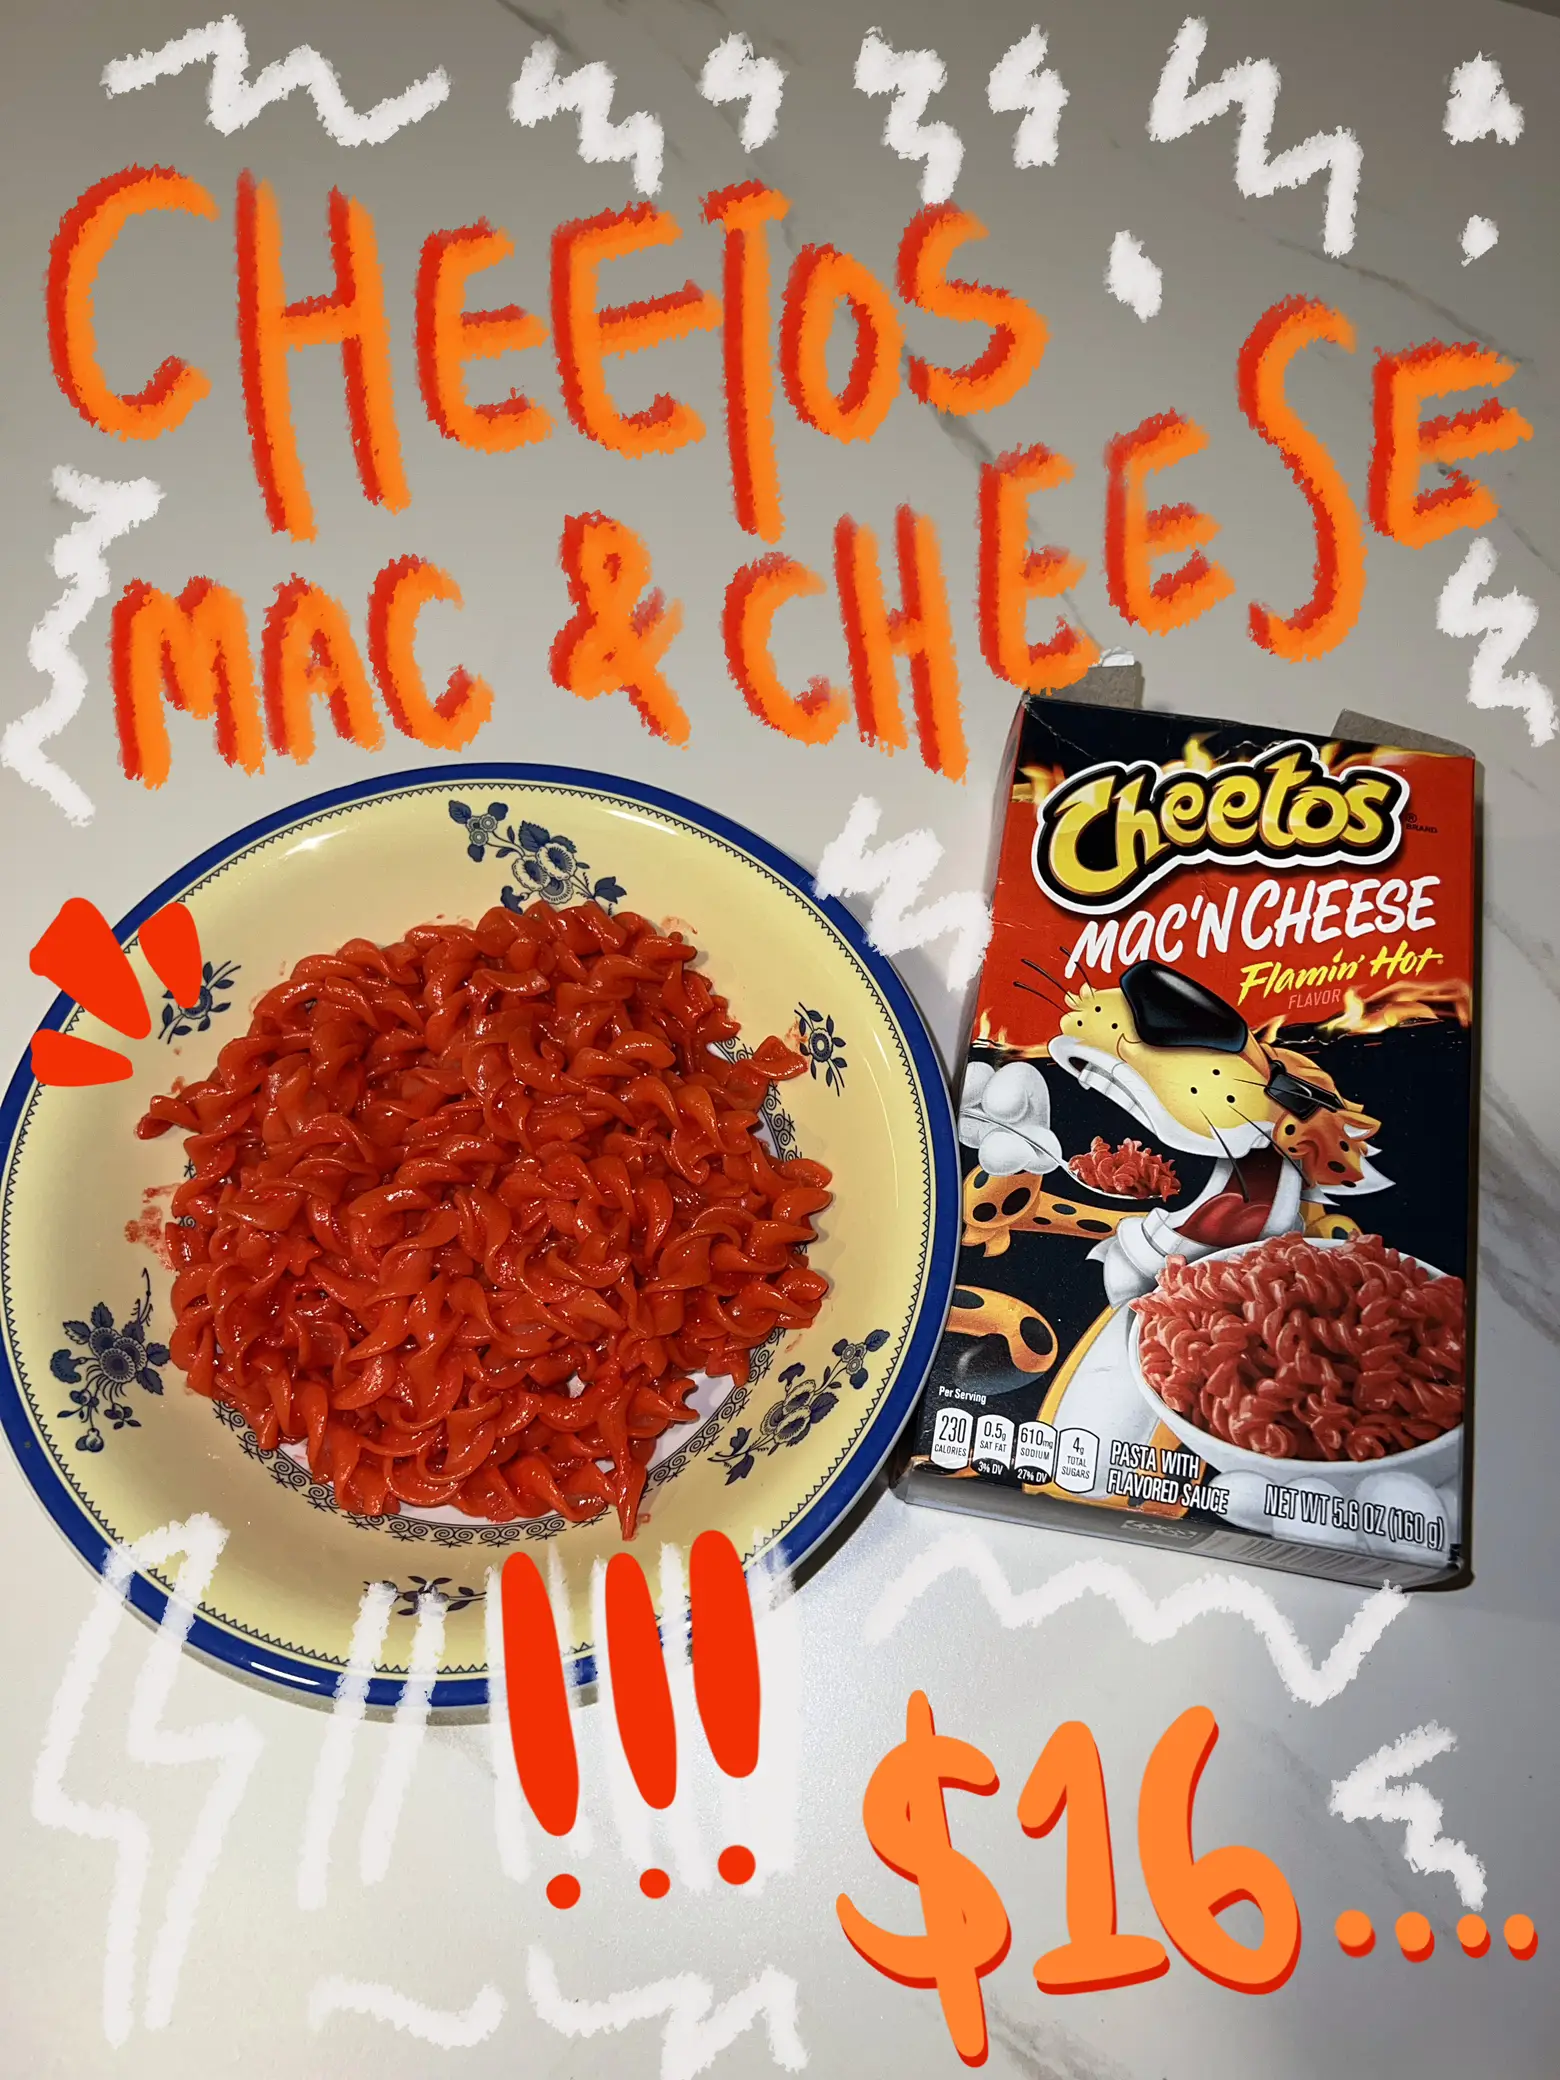 Cheetos Flamin' Hot Flavor Mac'n Cheese, 5.6 oz